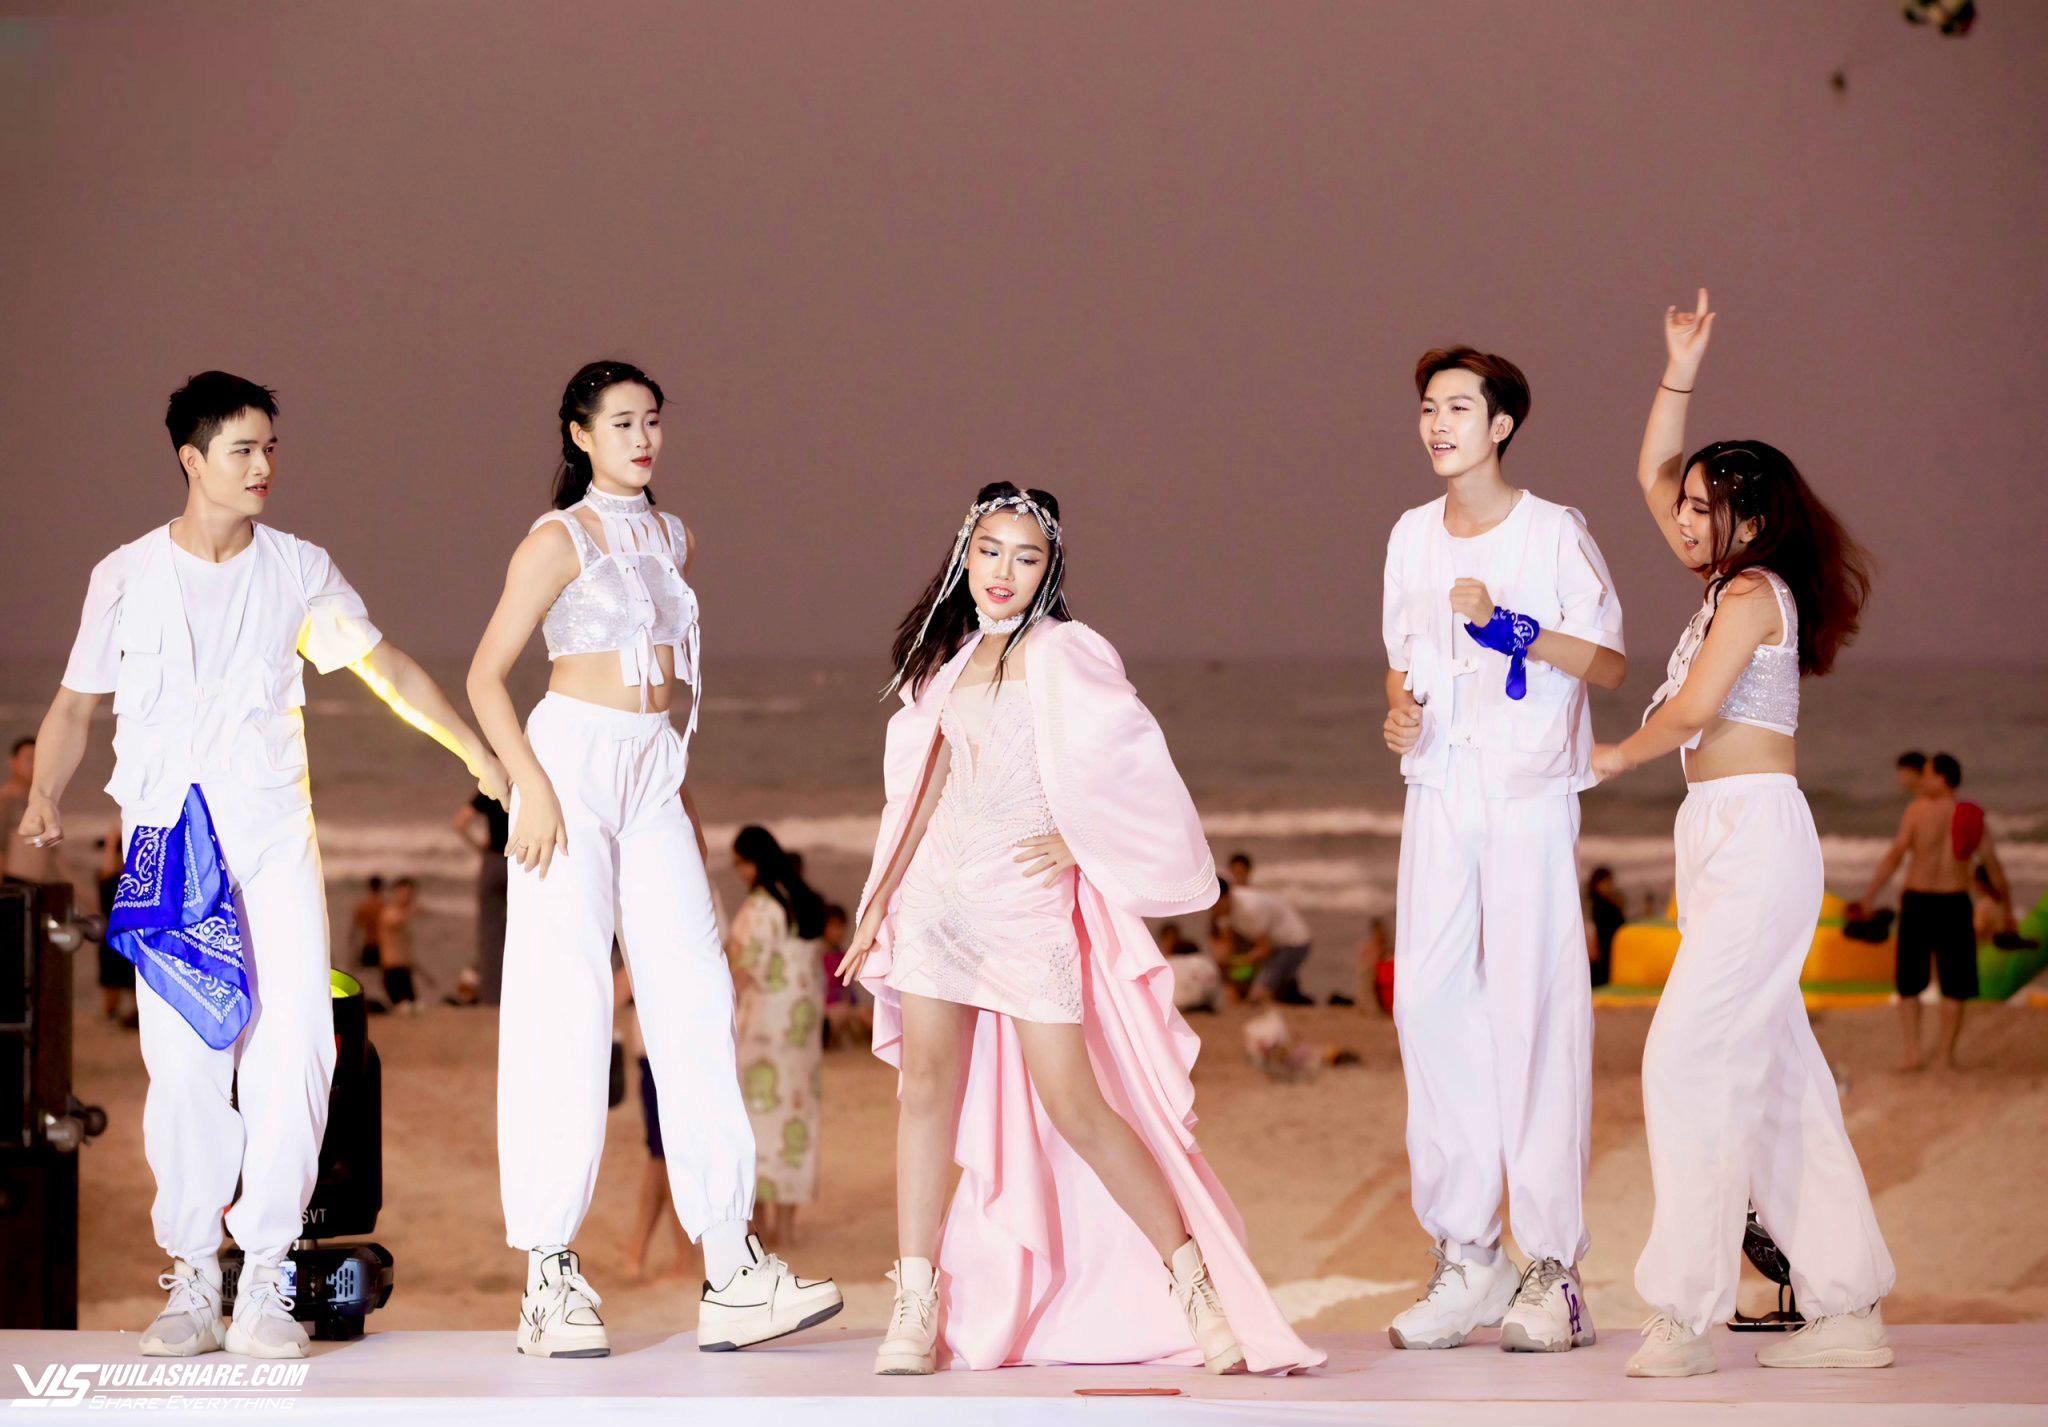 Mẫu nhí Trần Lê Băng Châu gây ấn tượng trên các sàn diễn thời trang- Ảnh 2.